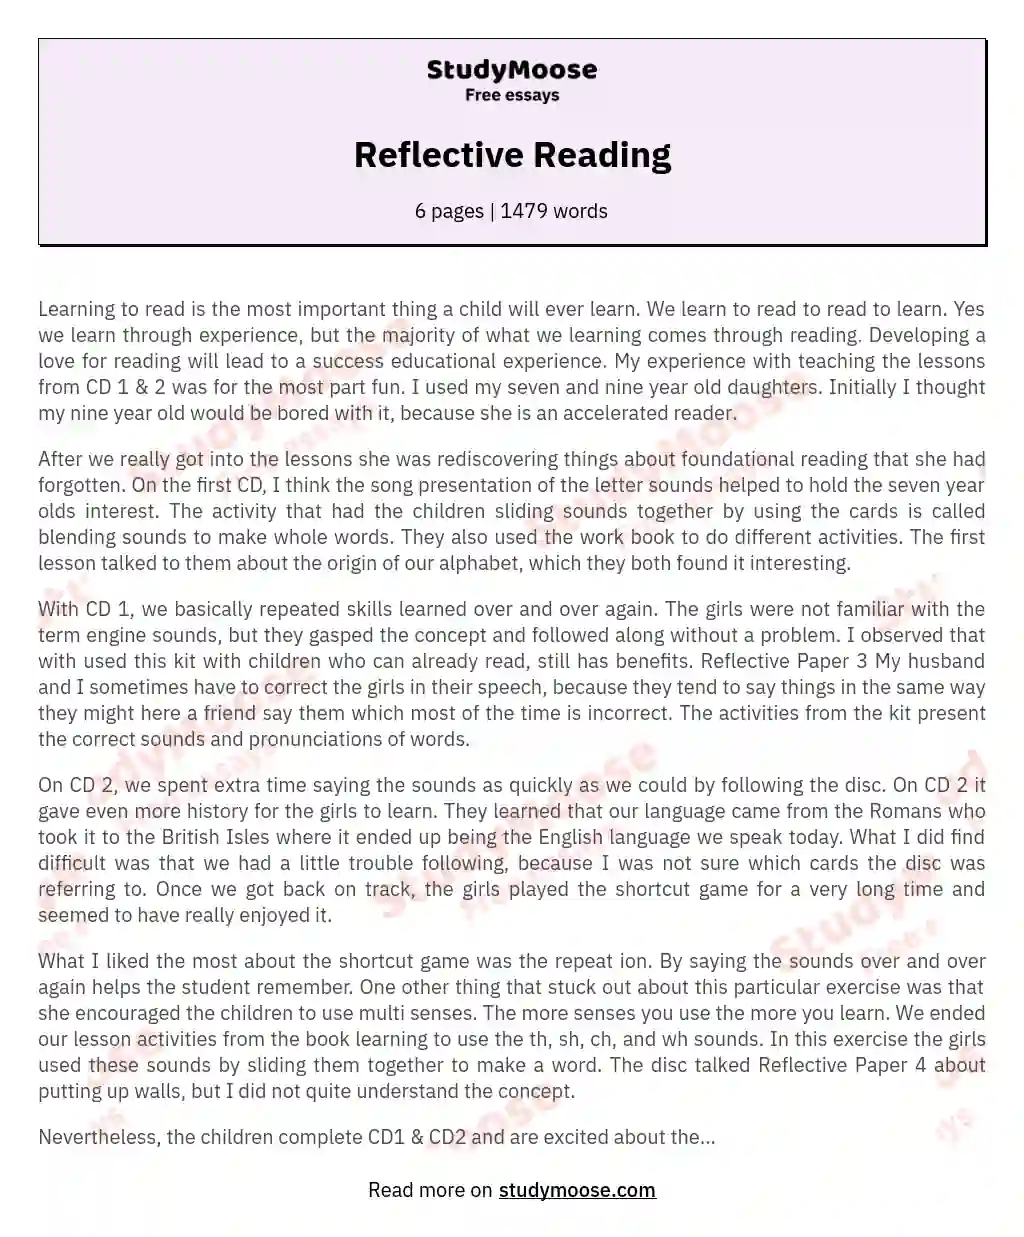 Reflective Reading essay